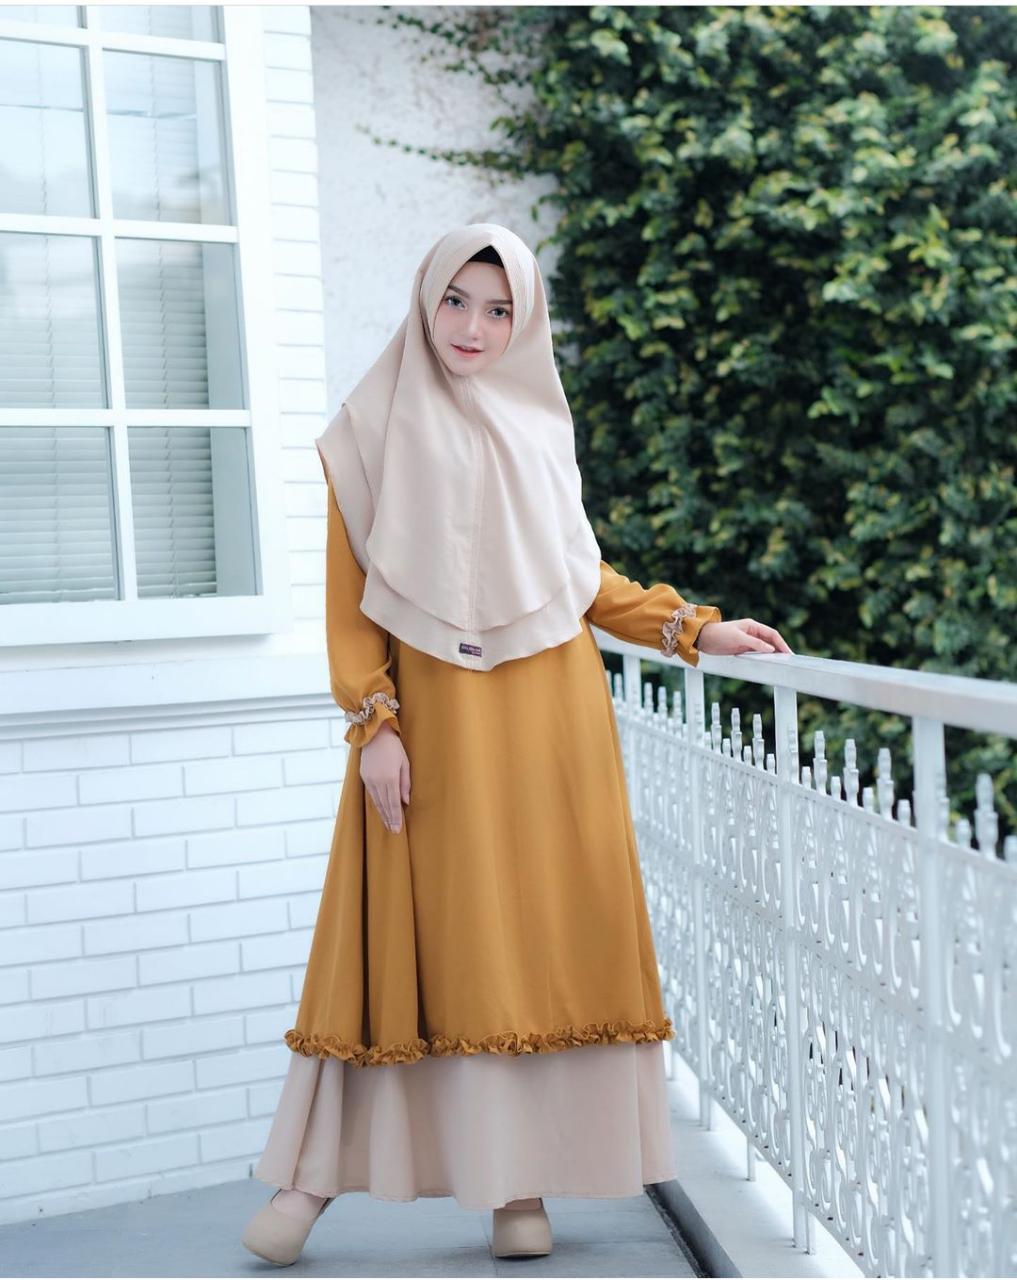 Baju Muslim Modern Gamis NISA SYARI Moscrepe (Free Hijab / Khimar ) Terusan Wanita Trendy Modern Baju Panjang Stelan Syar’i Polos Muslim Gaun Dress Pesta Murah Terbaru Pakaian Modis Simple Syari Couple Set Jumbo Casual Elegant 2019